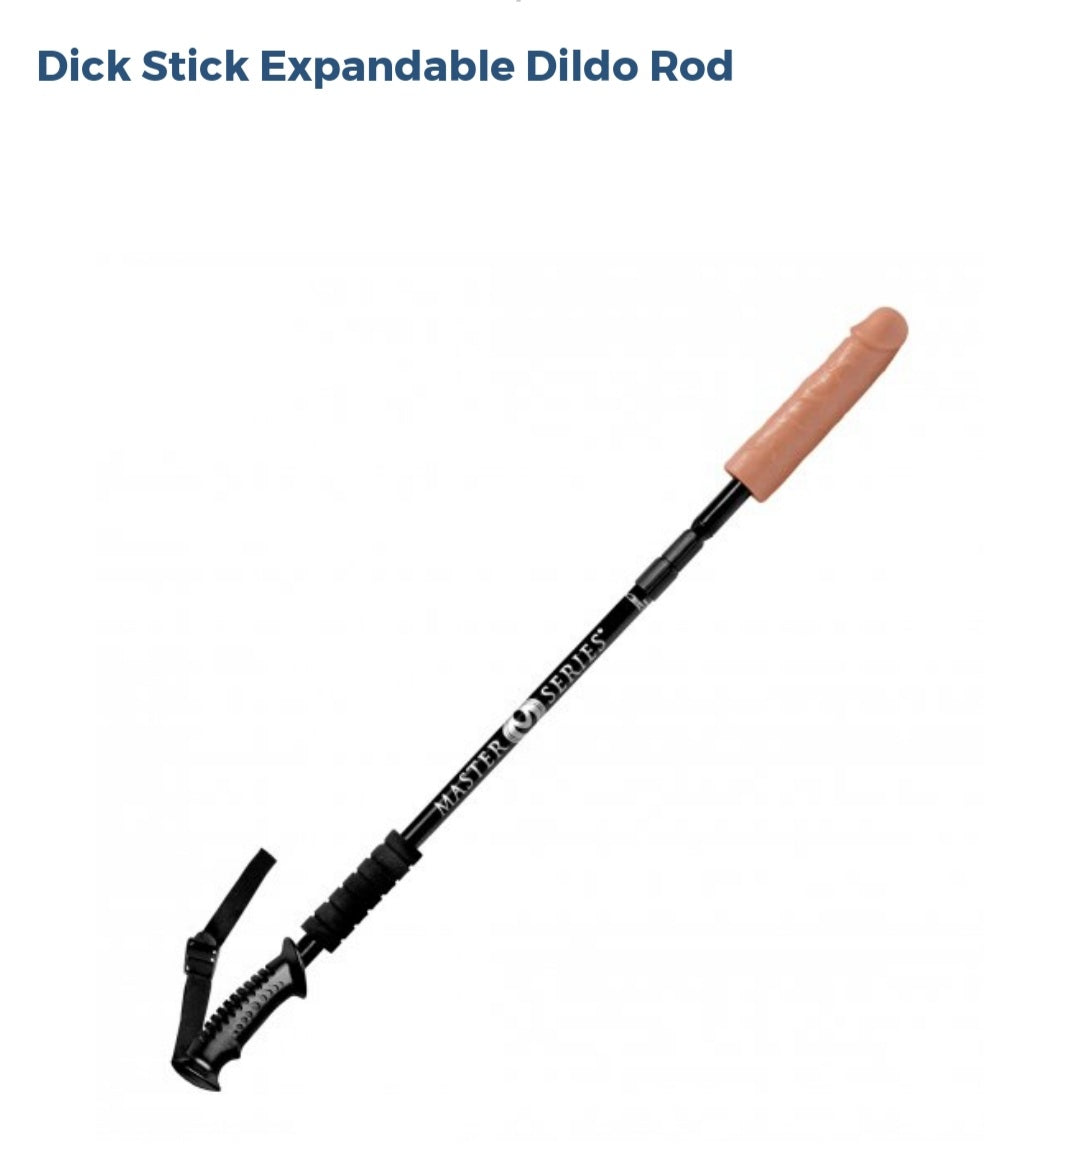 Dick Stick Expandable Dildo Rod